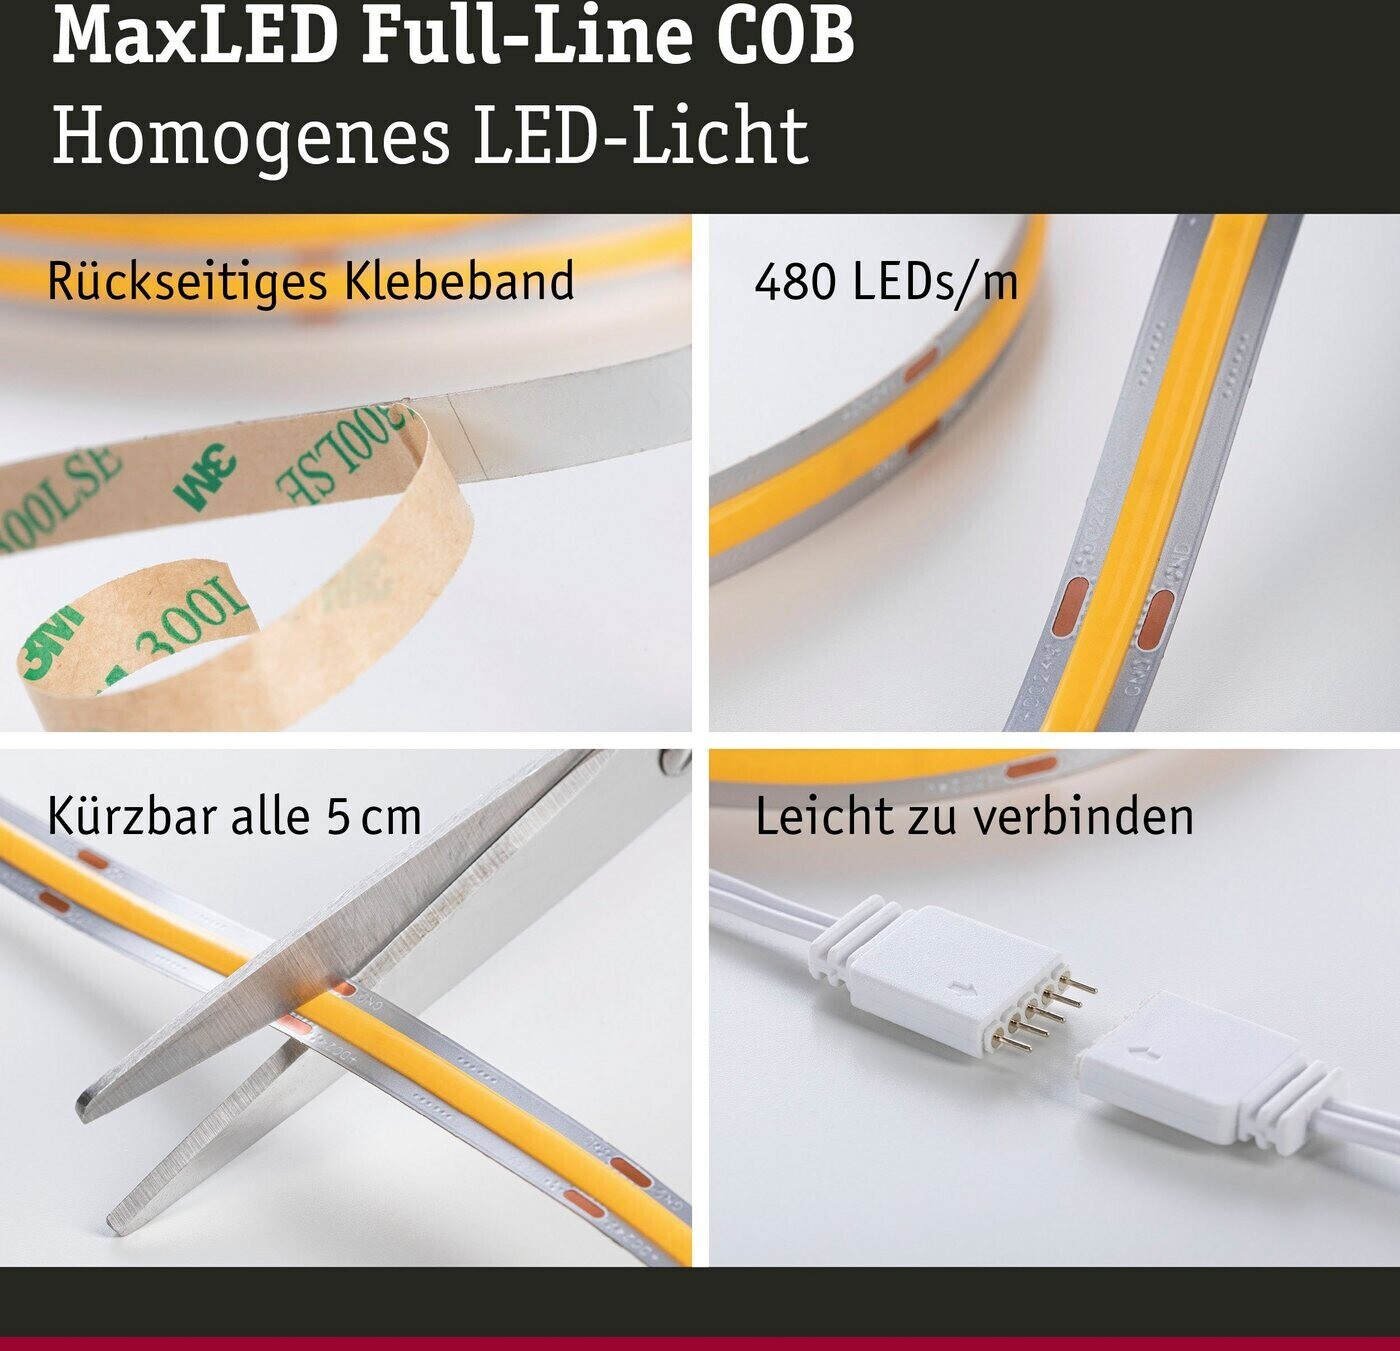 Preisvergleich ab COB 46,95 500 3m MaxLED (71046) Basisset € LED | Stripe Full-Line bei Paulmann